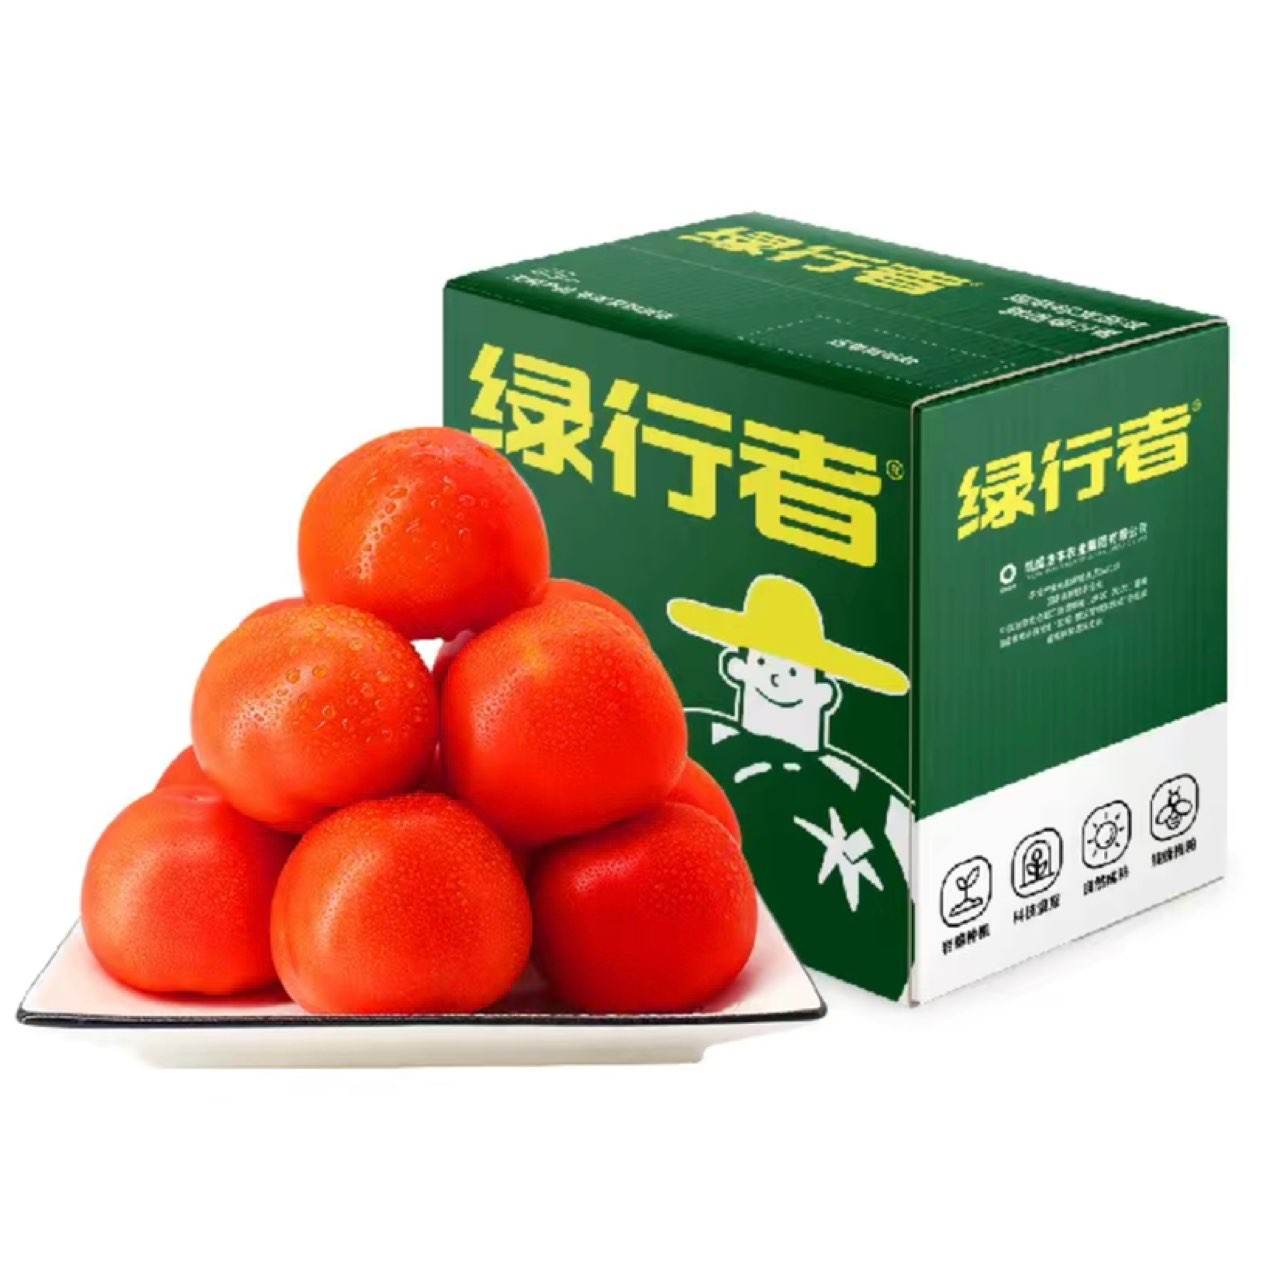 GREER 绿行者 红又红番茄品牌果5斤 20.9元